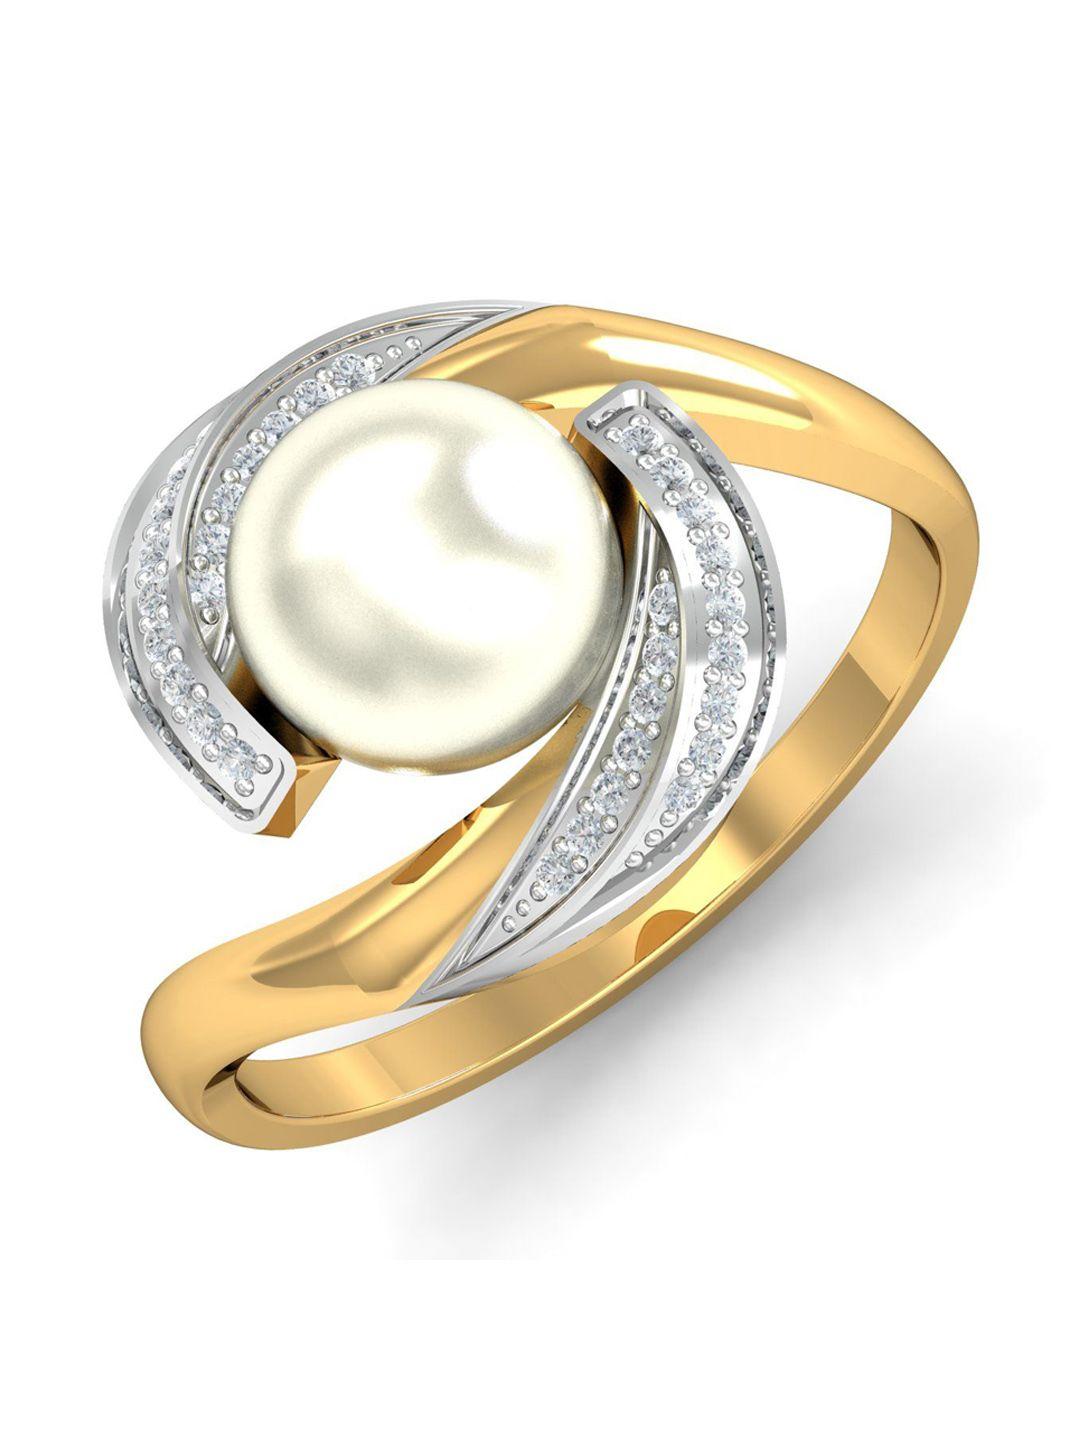 kuberbox noelle 18kt gold diamond studded pearl finger ring- 3.96gm